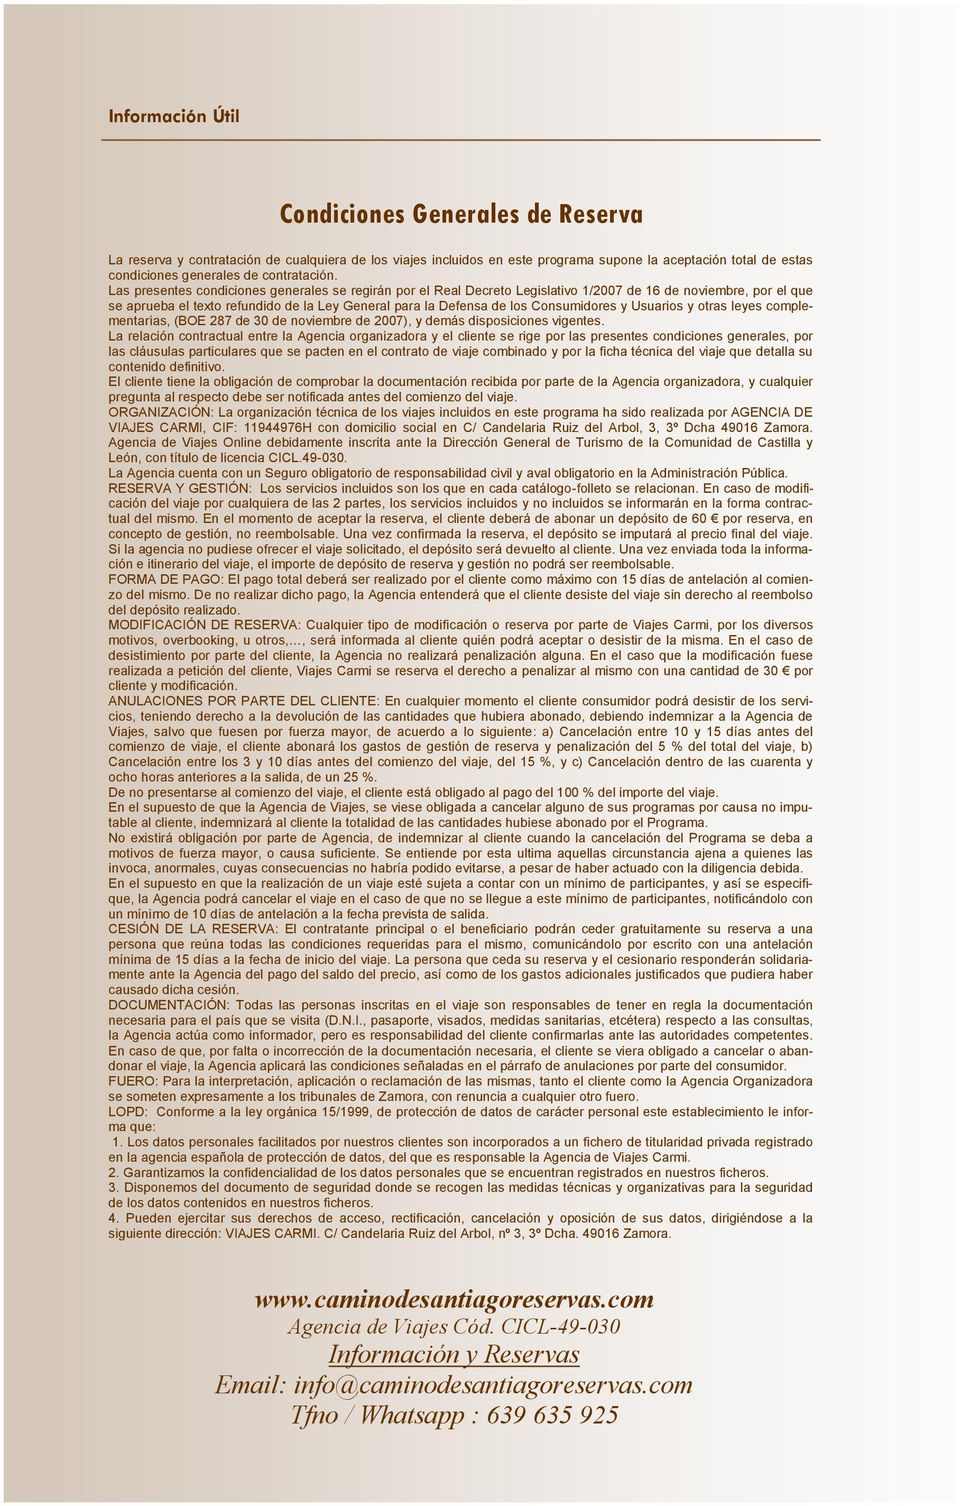 Las presentes condiciones generales se regirán por el Real Decreto Legislativo 1/2007 de 16 de noviembre, por el que se aprueba el texto refundido de la Ley General para la Defensa de los